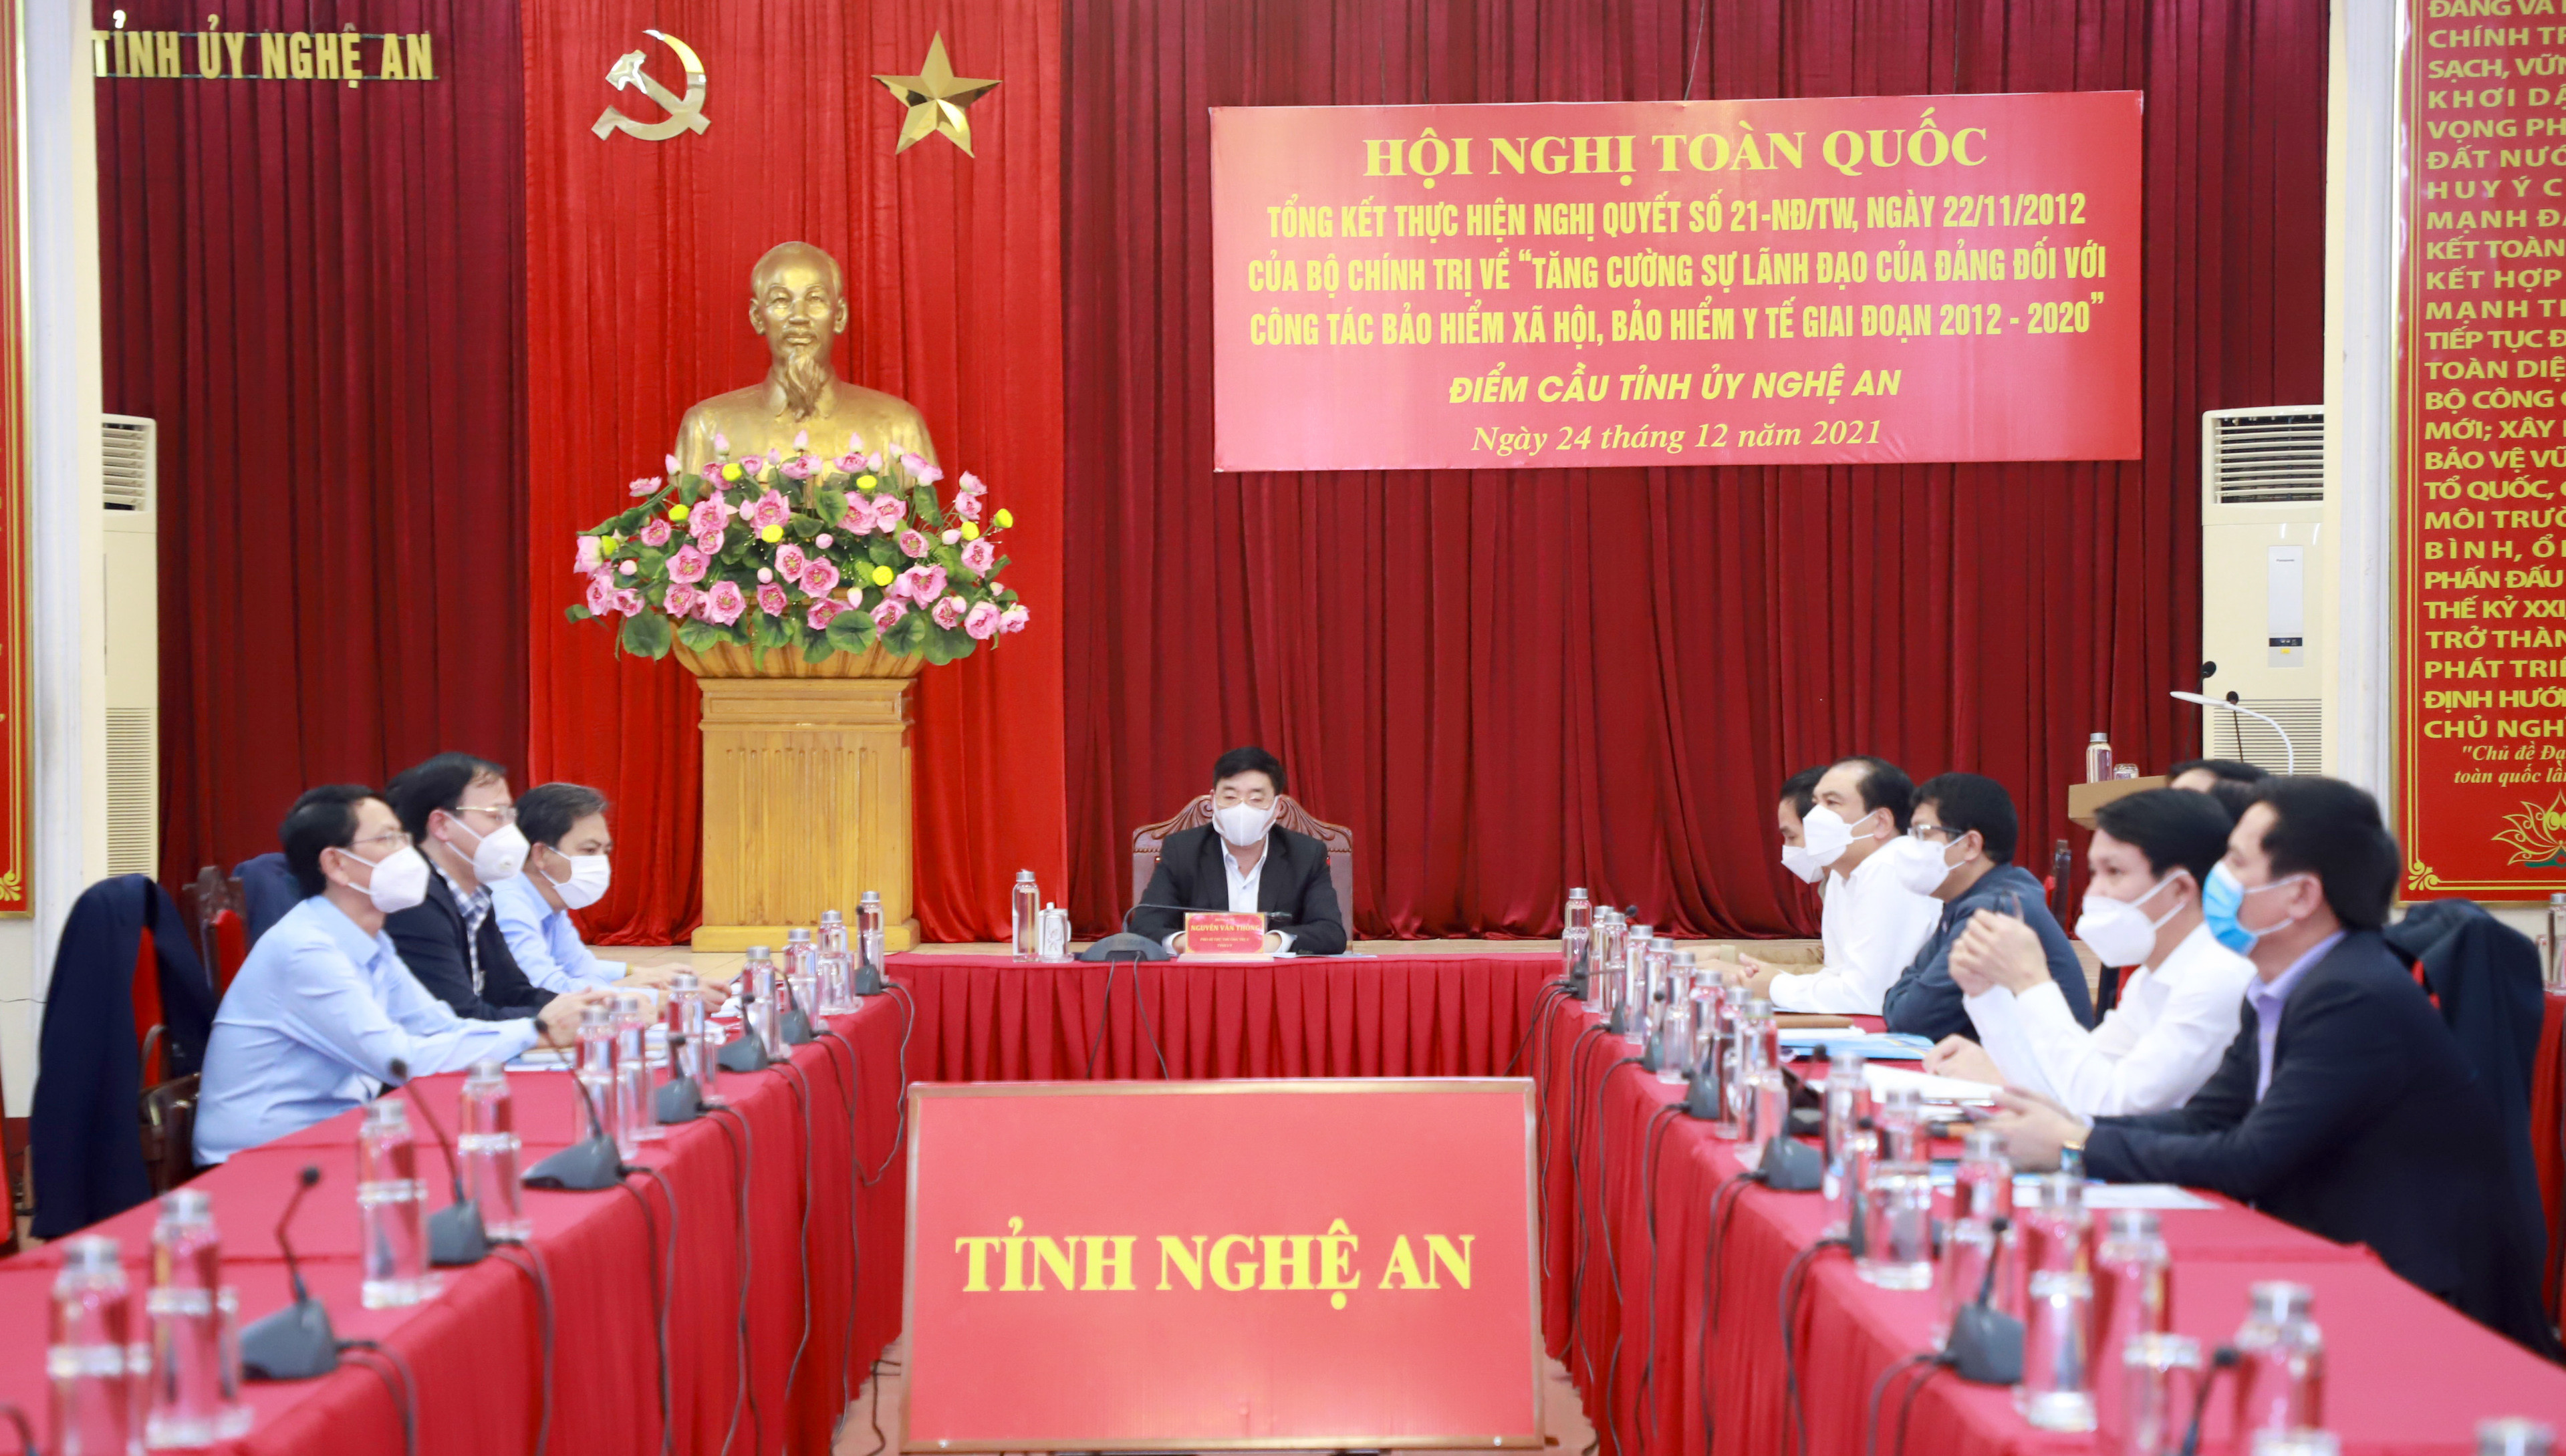 Toàn cảnh hội nghị tại điểm cầu Tỉnh ủy Nghệ An. Ảnh: Thành Duy